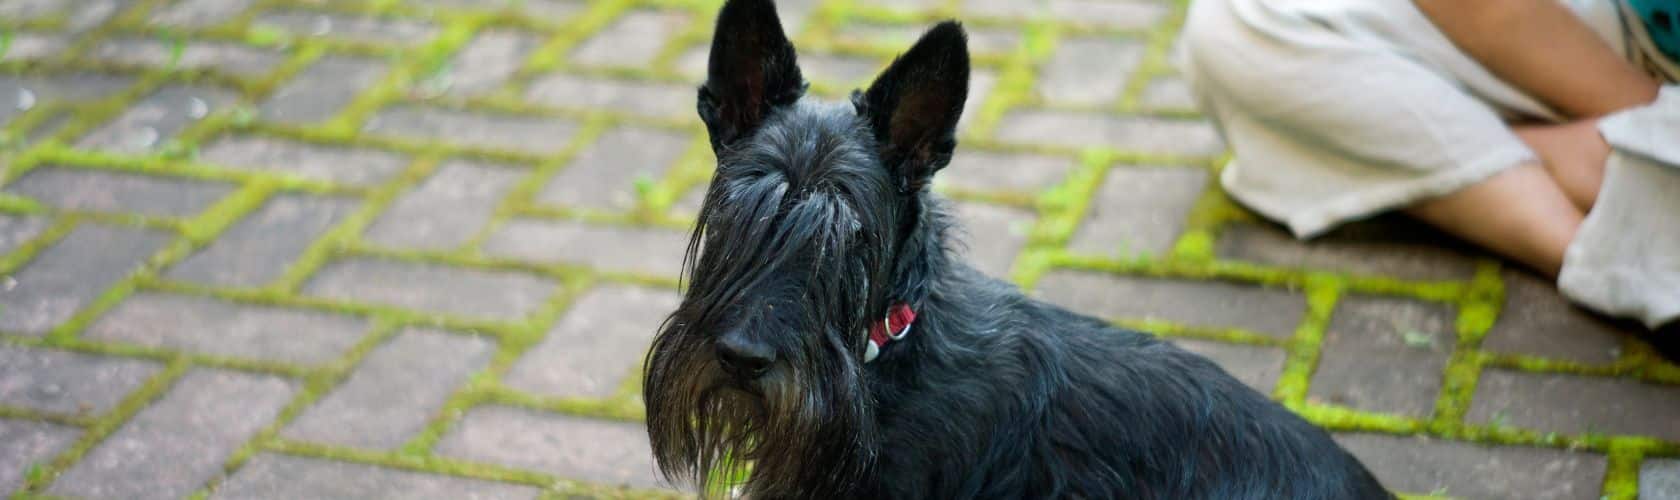 blog creche para Scottish Terrier 06_06 (1)